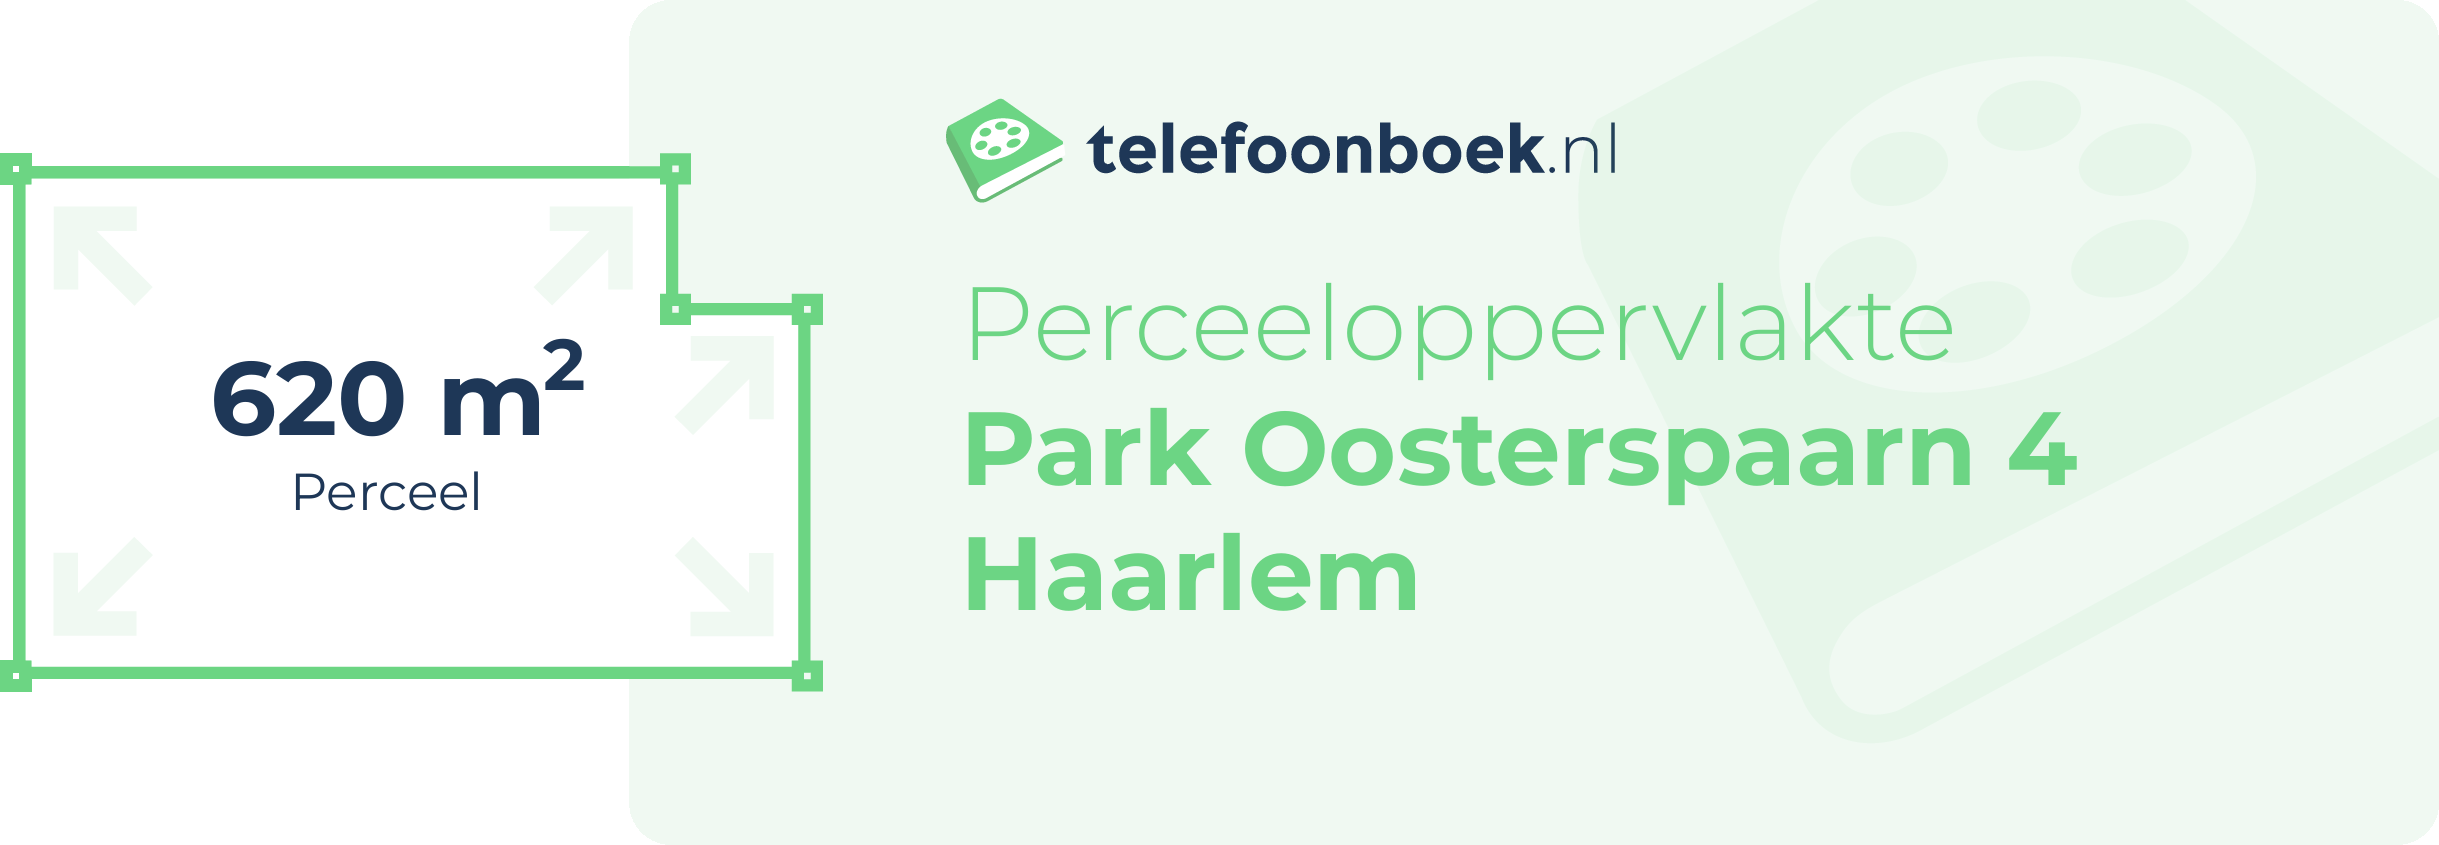 Perceeloppervlakte Park Oosterspaarn 4 Haarlem